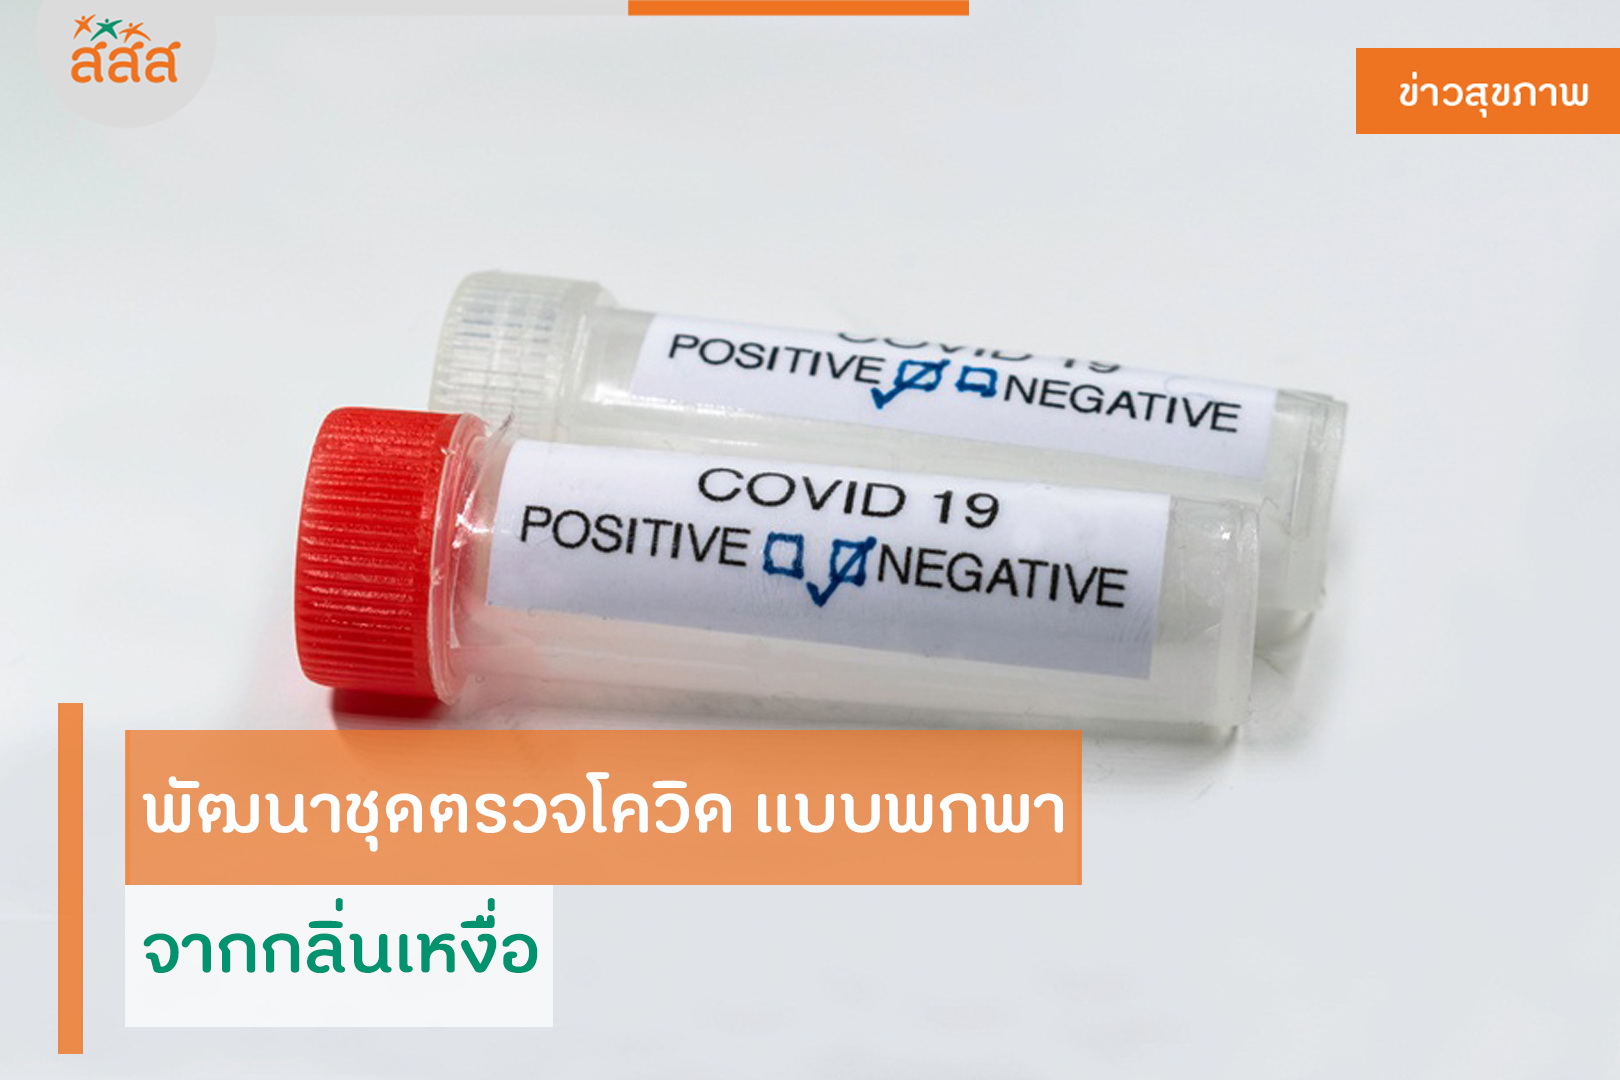 พัฒนาชุดตรวจโควิด-19  แบบพกพา จากกลิ่นเหงื่อ thaihealth